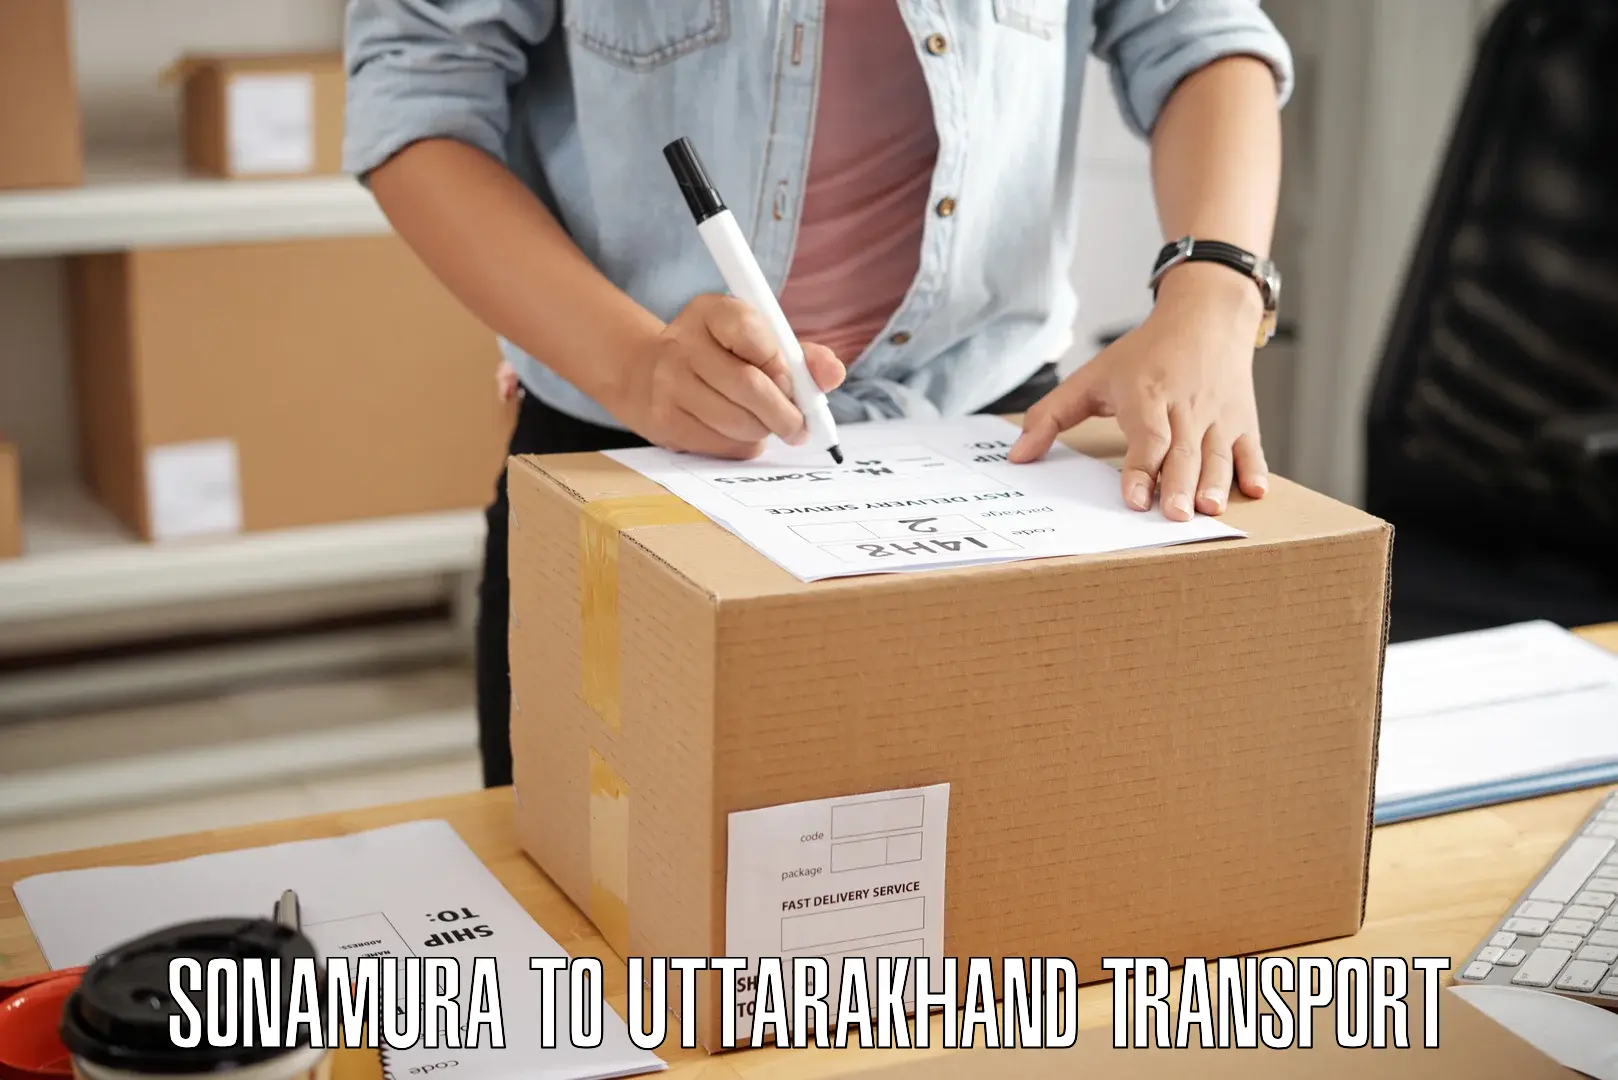 Transport in sharing Sonamura to Uttarakhand